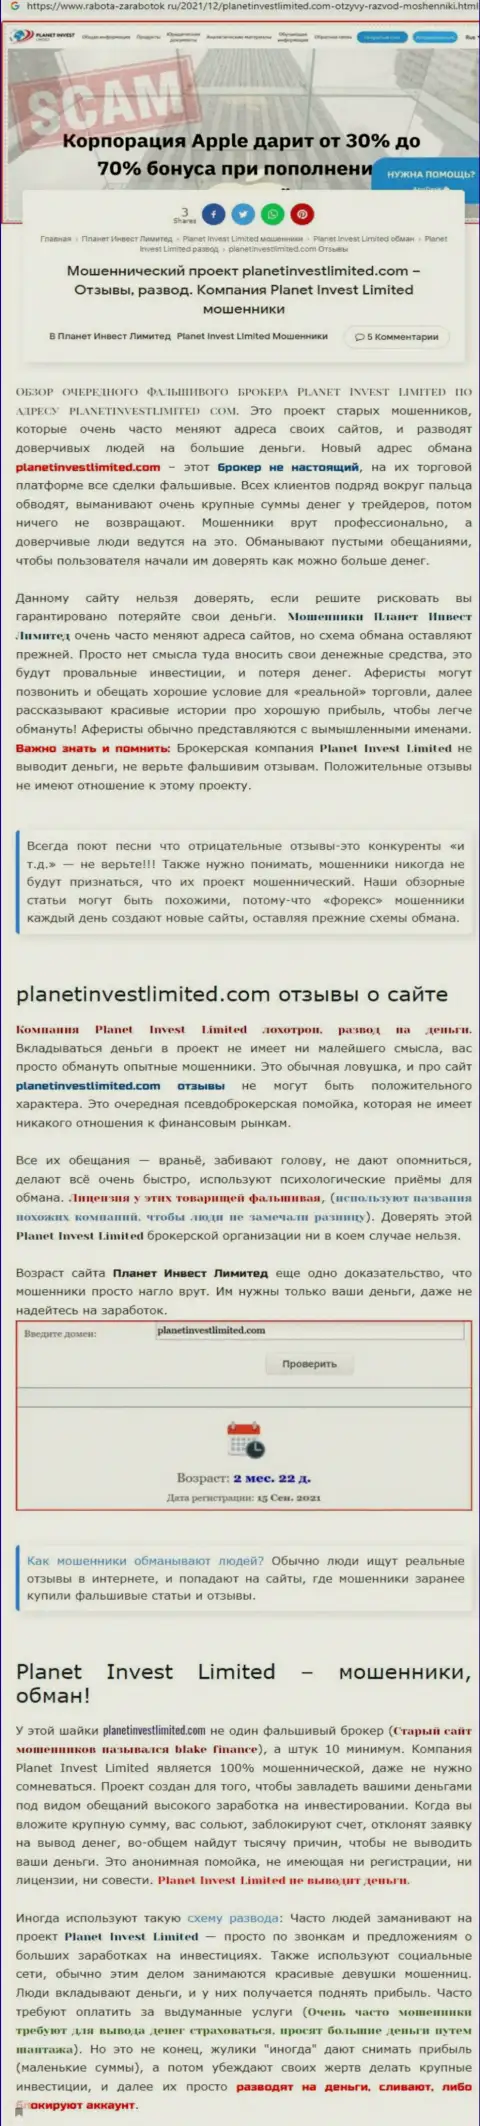 Стоит ли совместно работать с компанией Planet Invest Limited ??? (Обзор противозаконных действий компании)